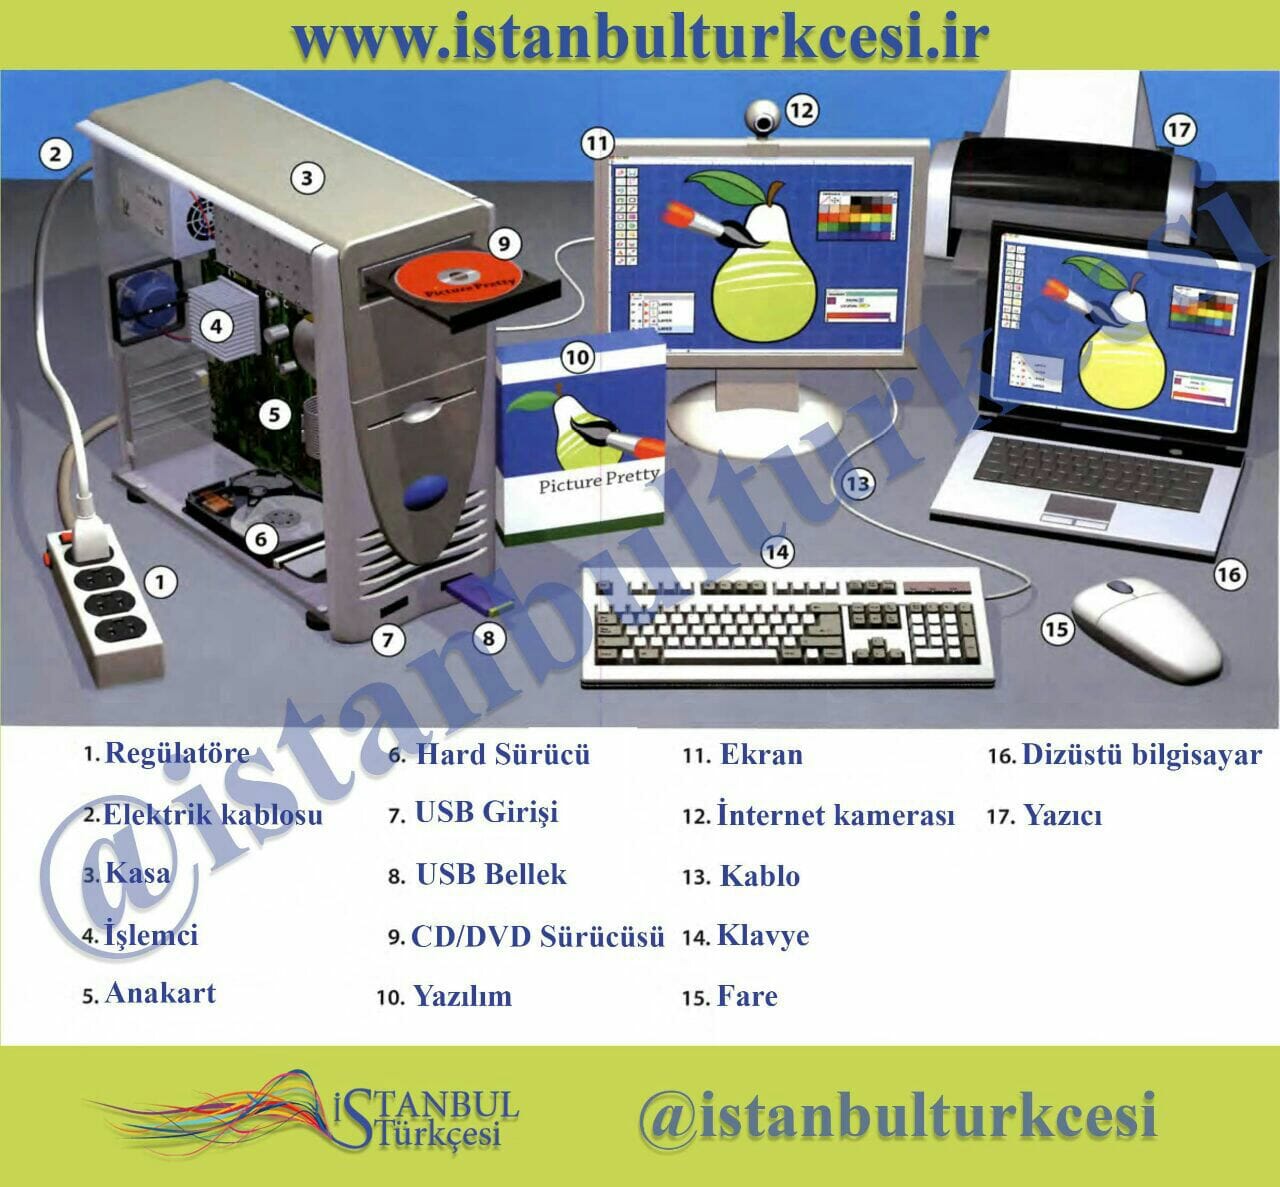 کامپیوتر و لوازم جانبی به ترکی استانبولی